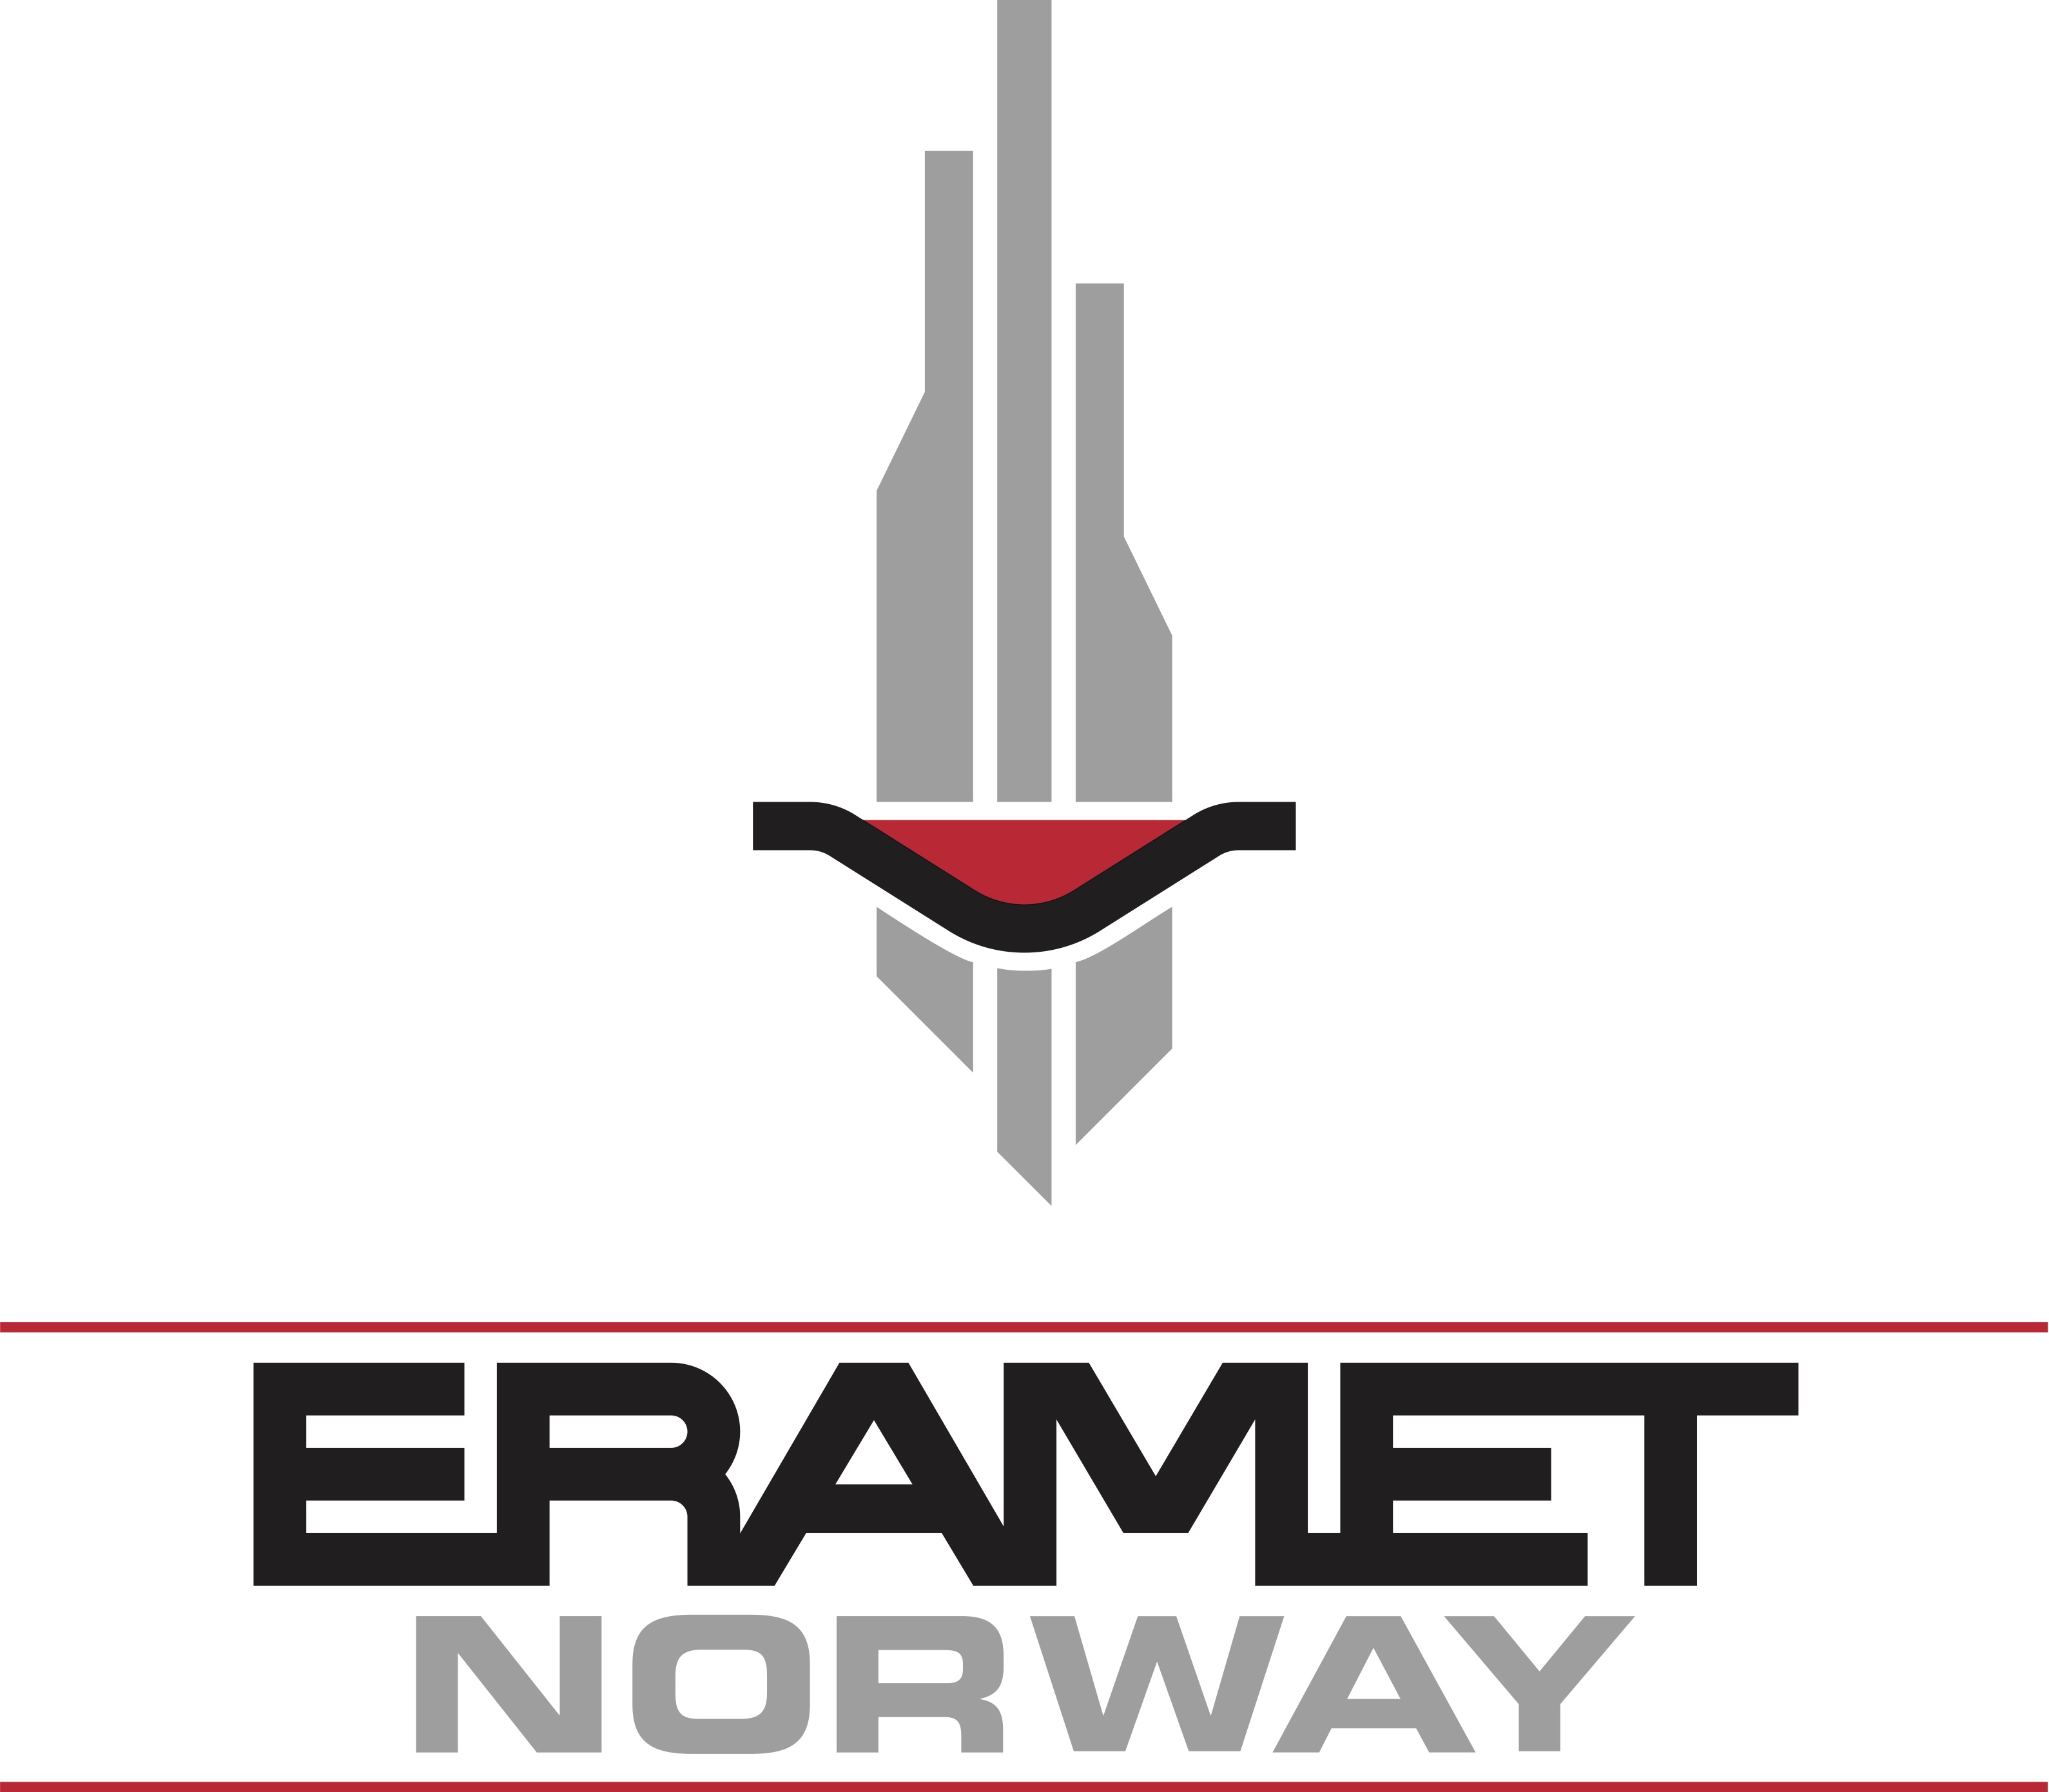 ERAMET NORWAY AS, Utviklingsgruppen